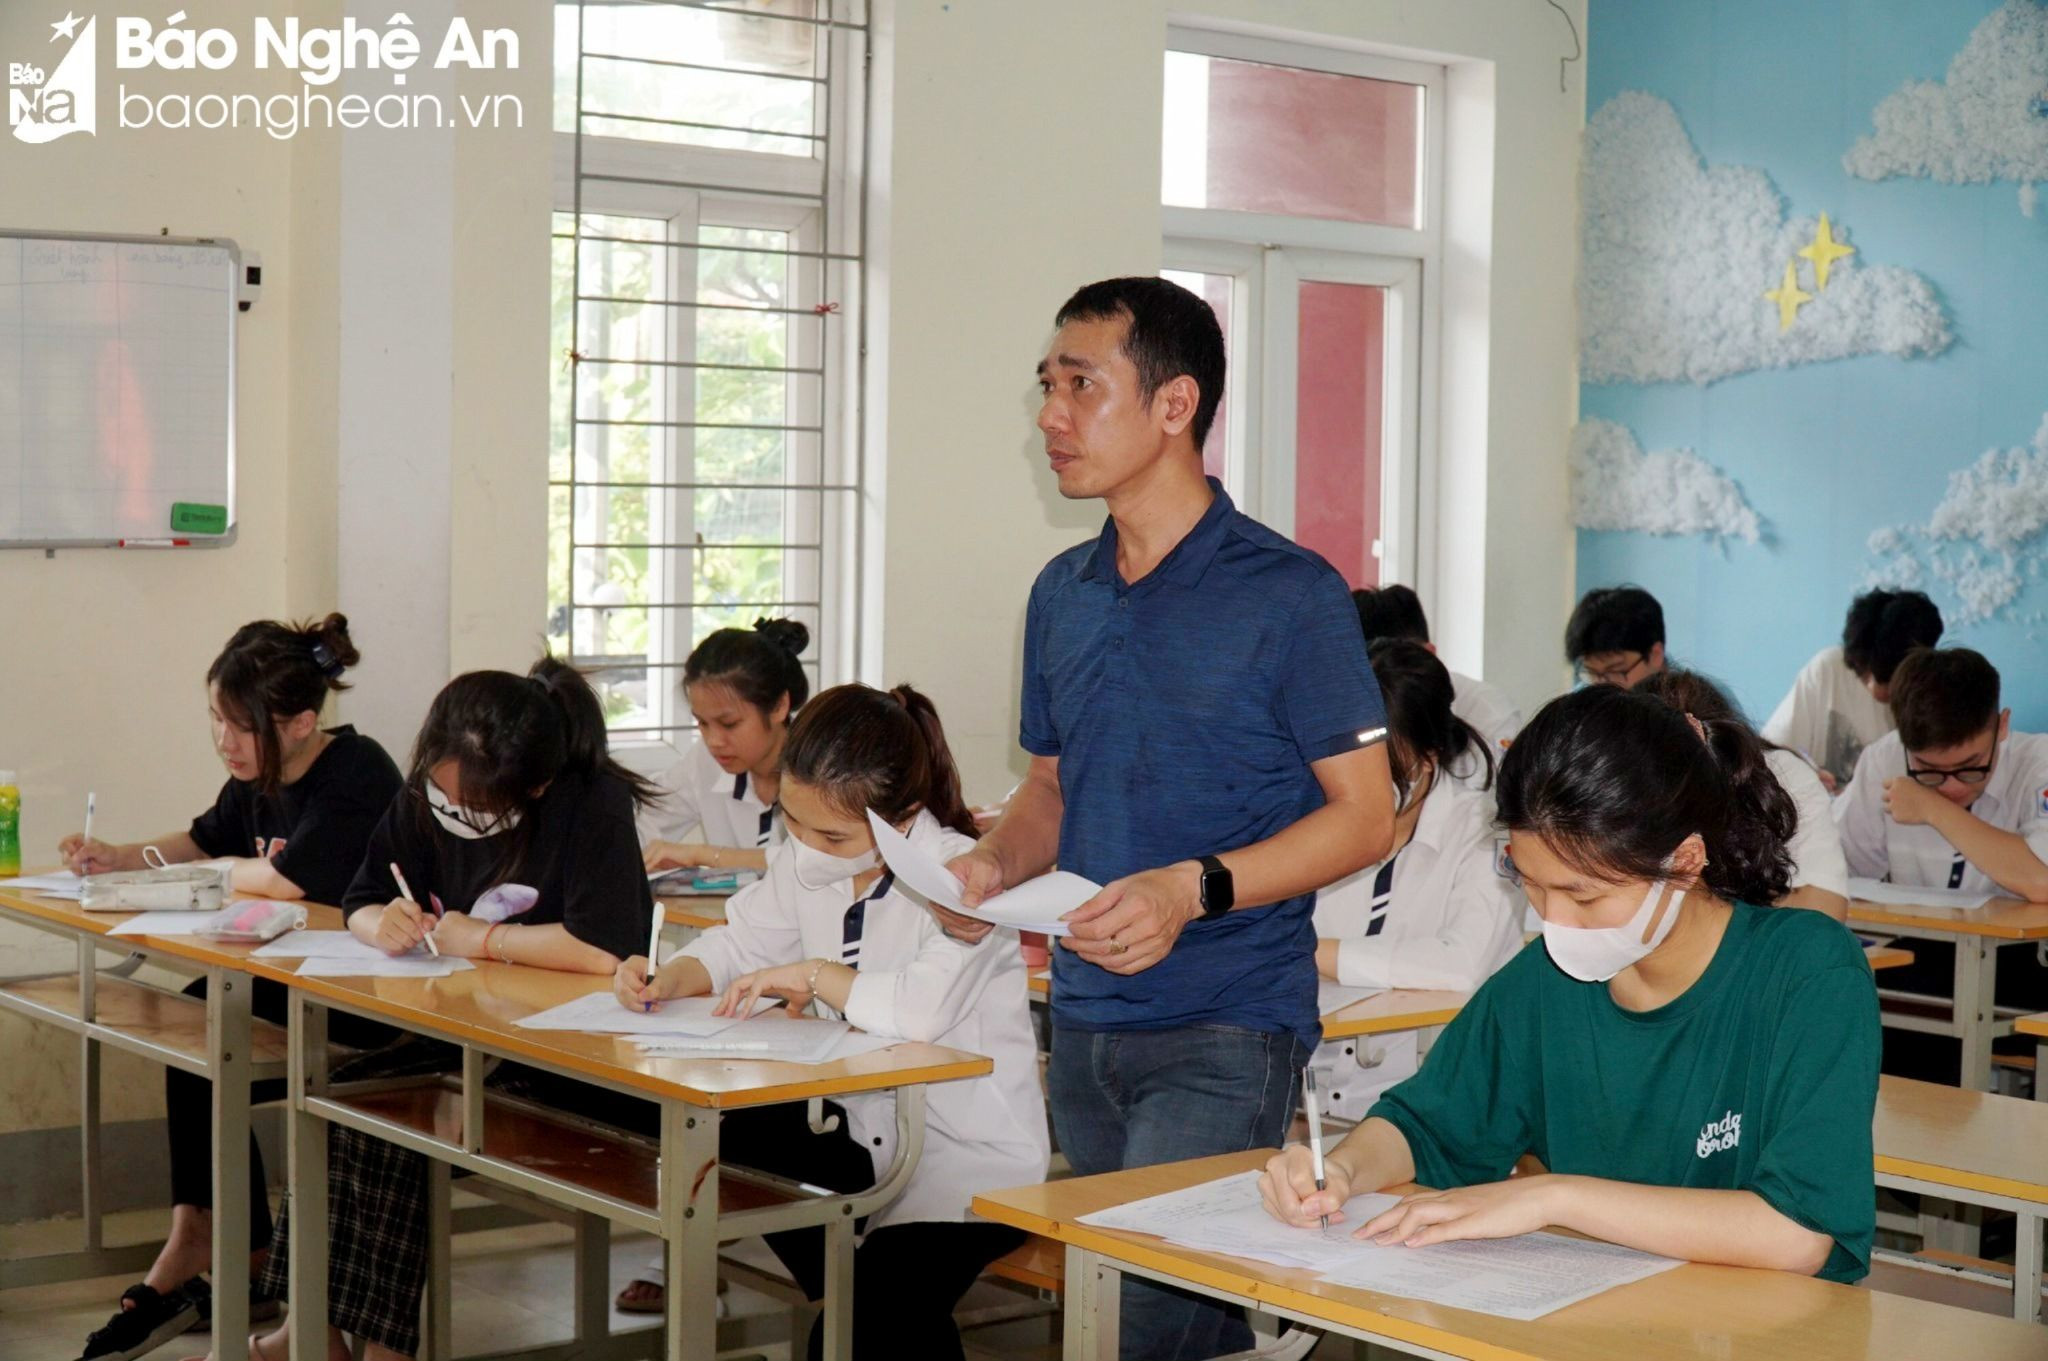 bna_Học sinh Trường THPT Huỳnh Thúc Kháng tham dự Kỳ thi thử tốt nghiệp THPT năm 2023 Đây là ngôi trường.jpg